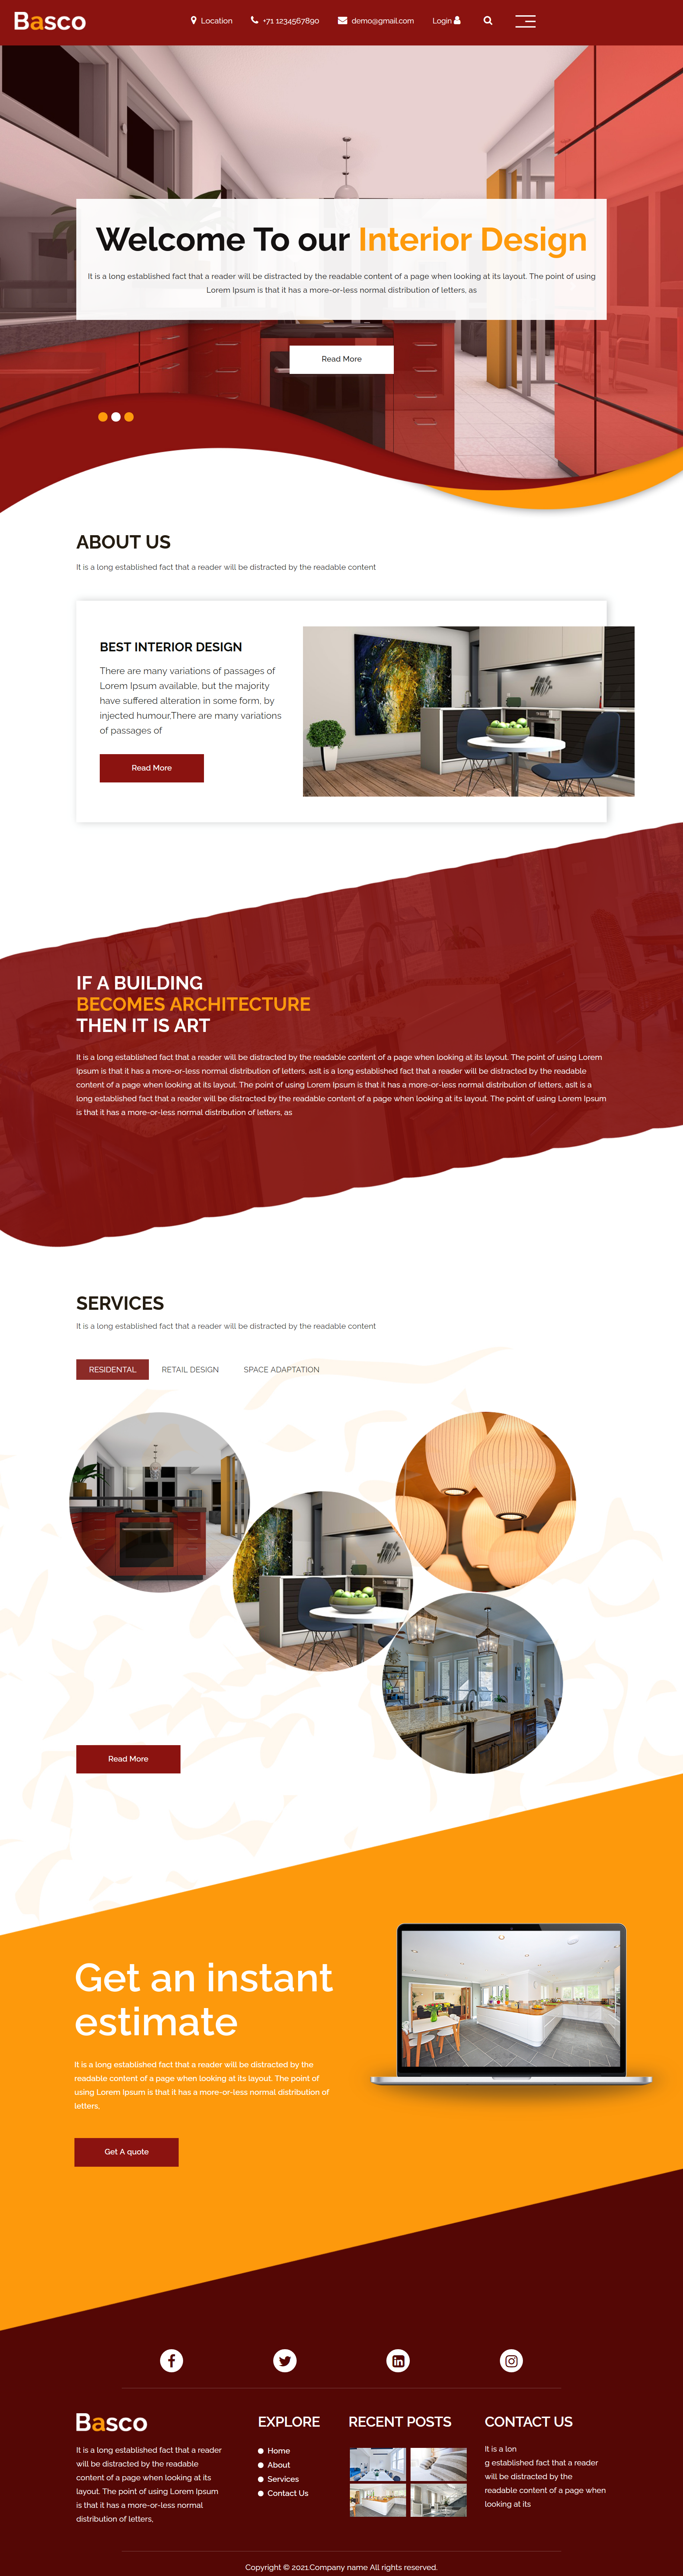 红色简洁风格响应式高端室内设计企业网站模板